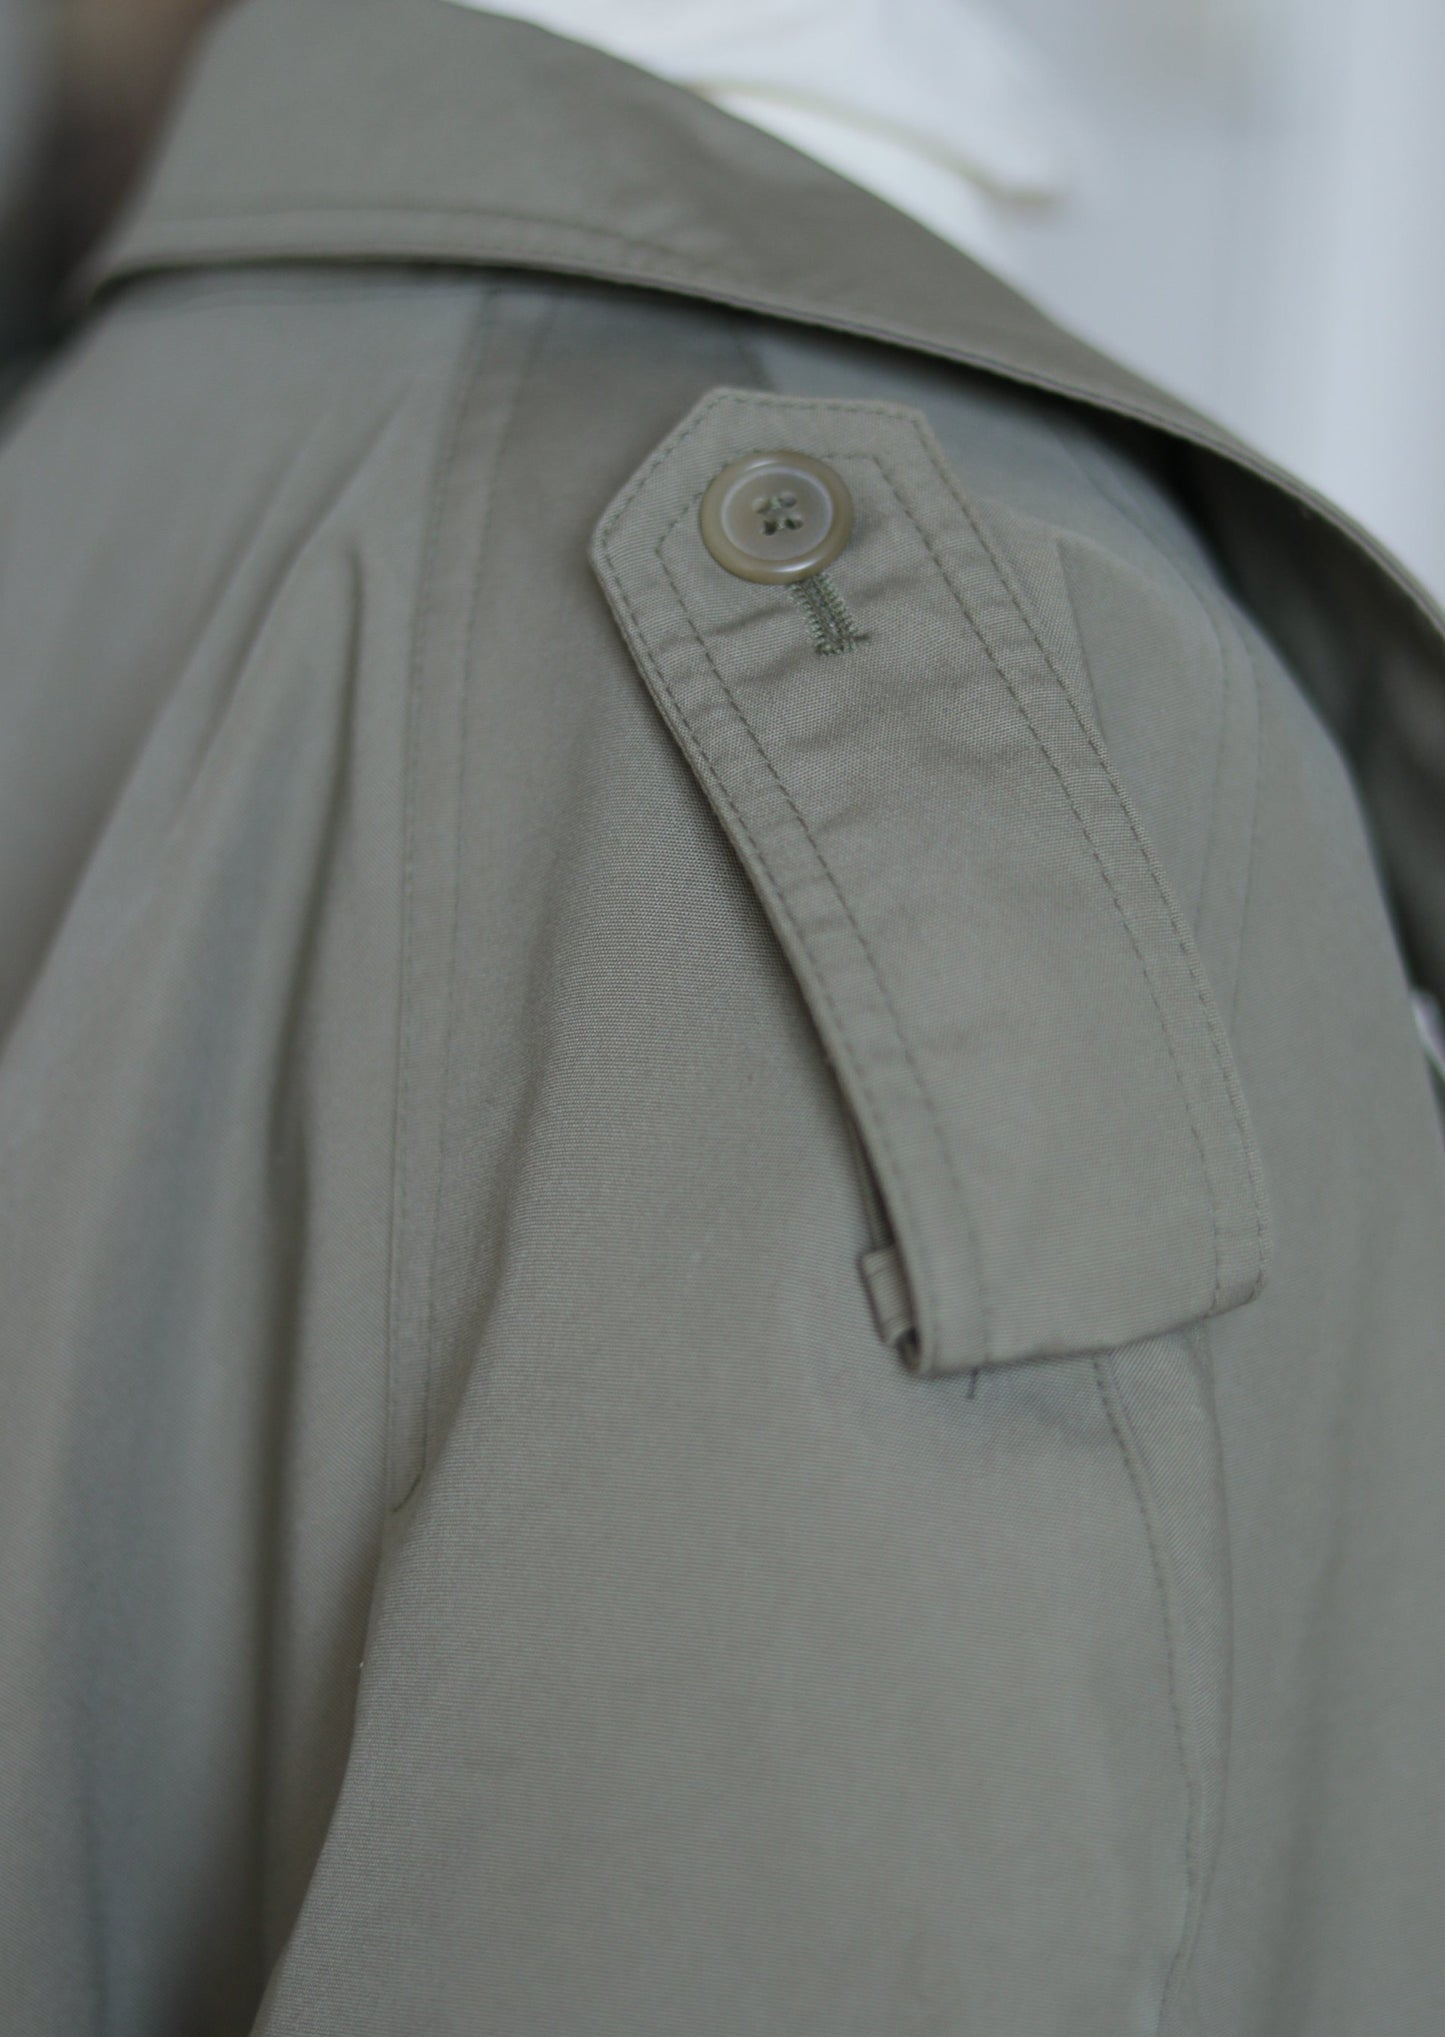 JUPITER trench coat vintage